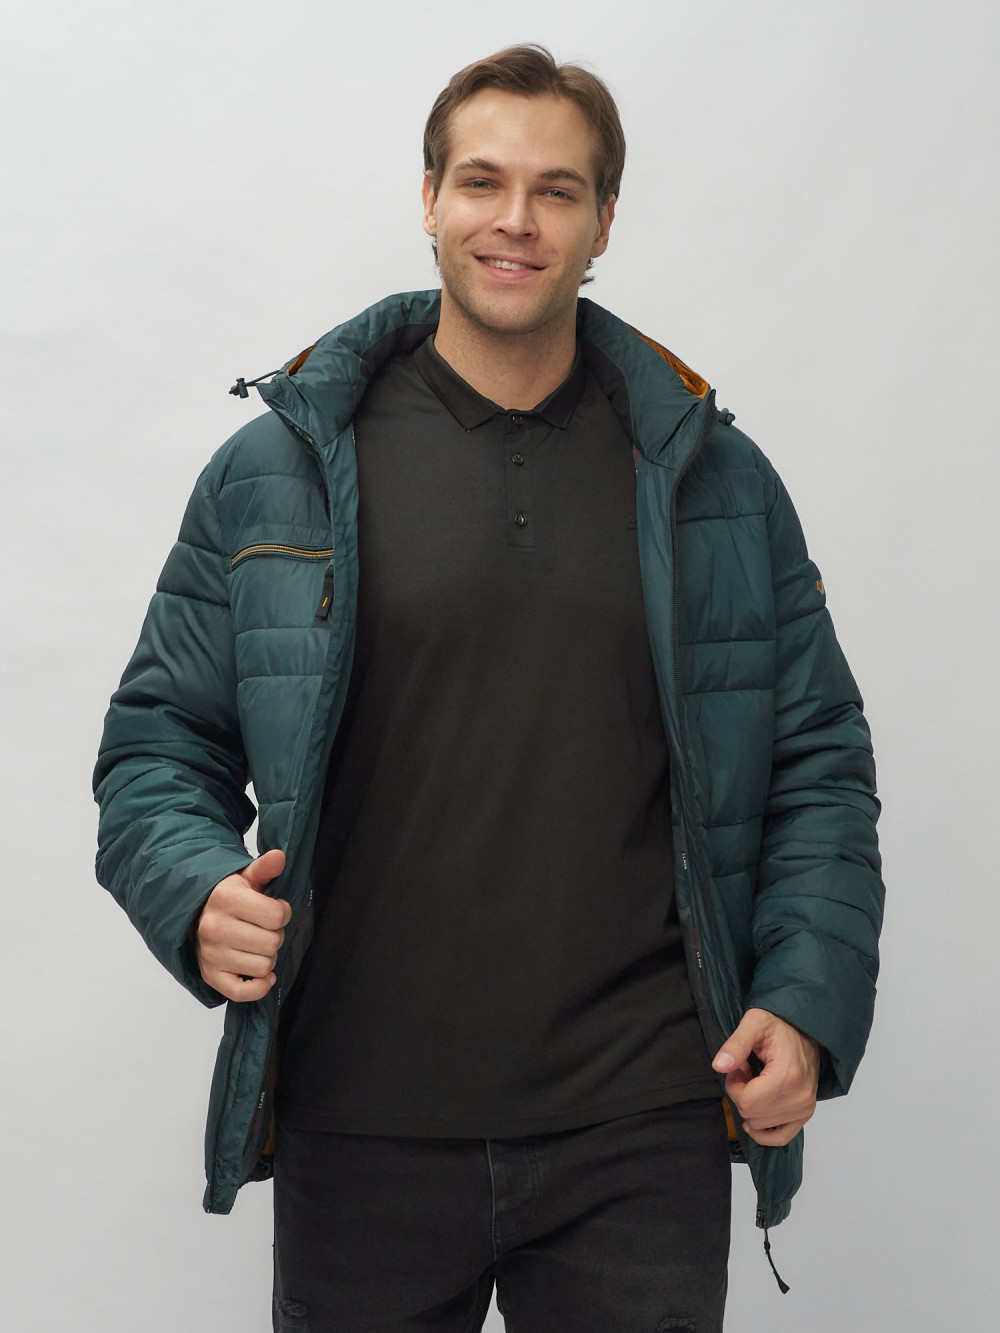 Купить куртку мужскую спортивную весеннюю оптом от производителя недорого в Москве 62175TZ 1